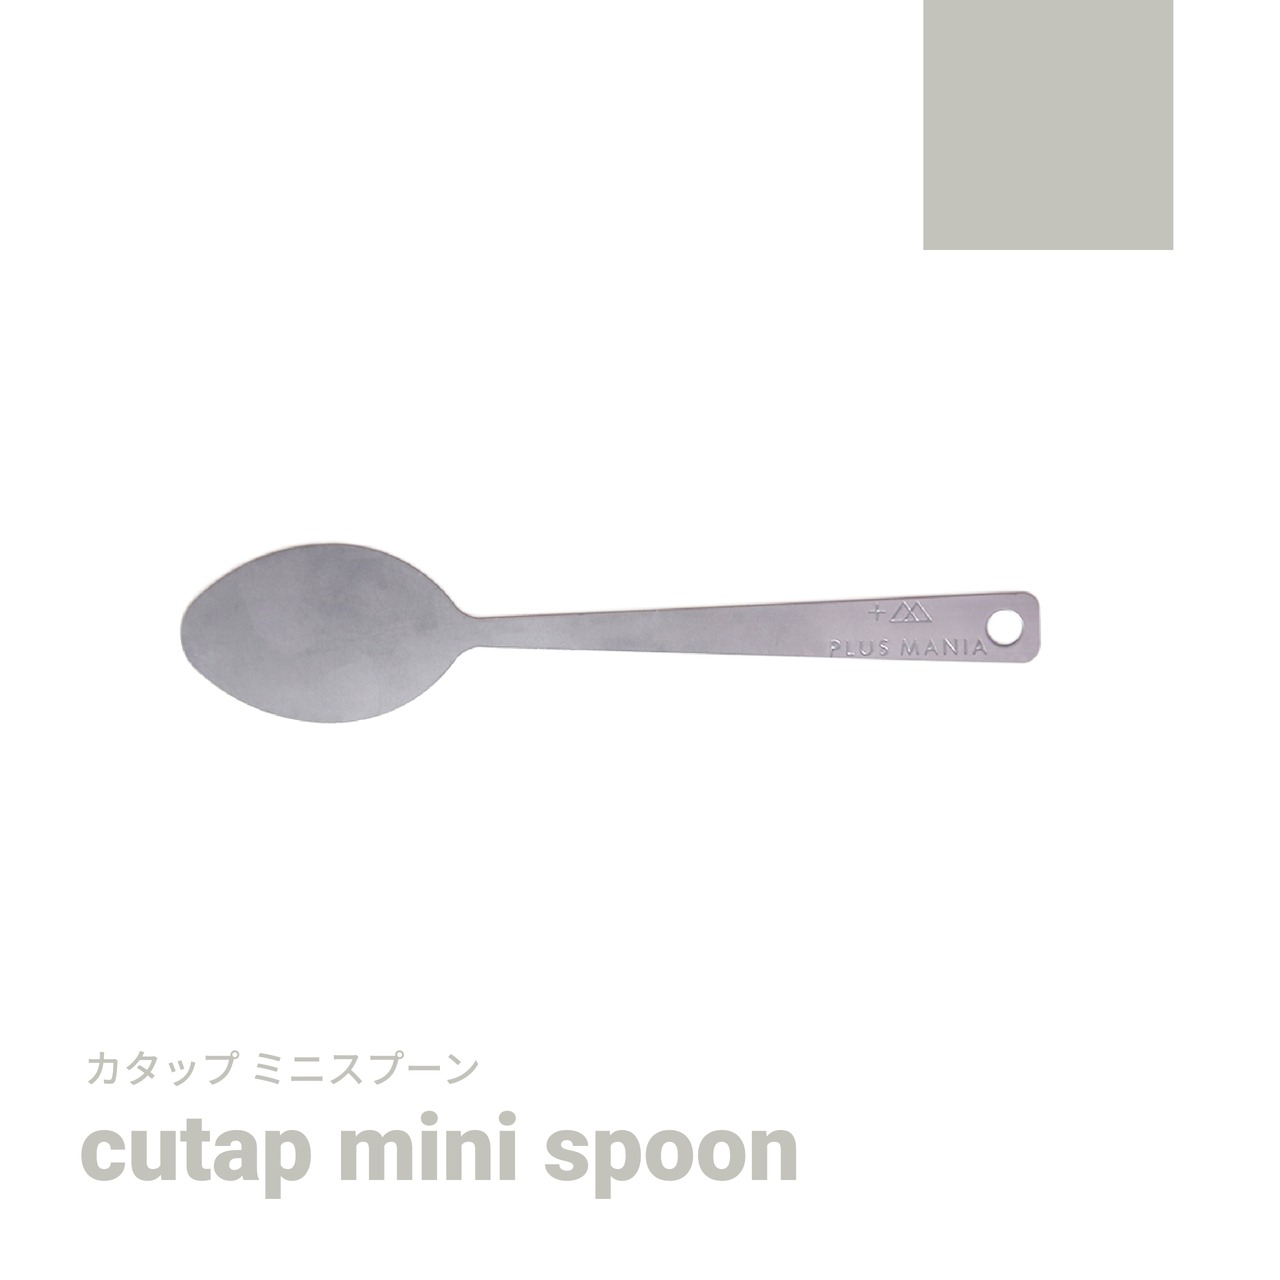 cutap mini spoon [カタップミニスプーン]